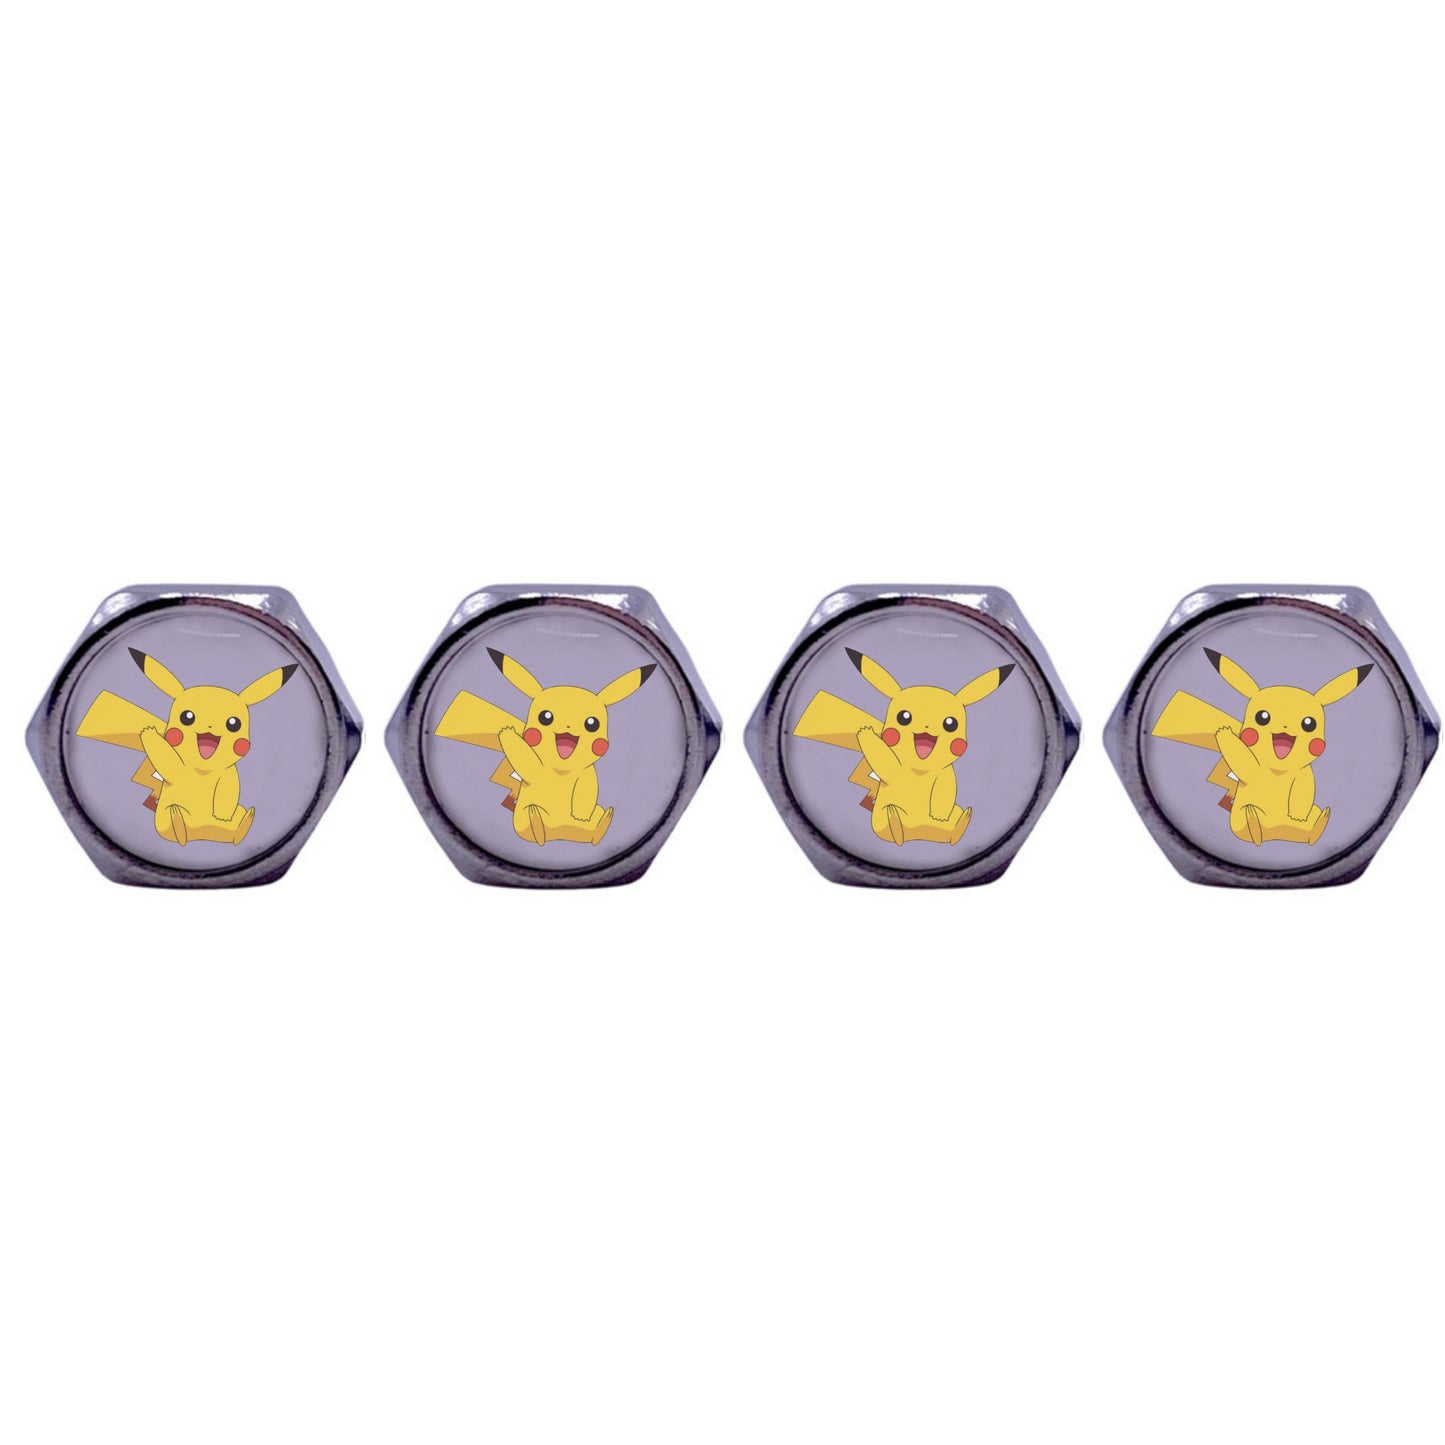 Pikachu Valve Caps